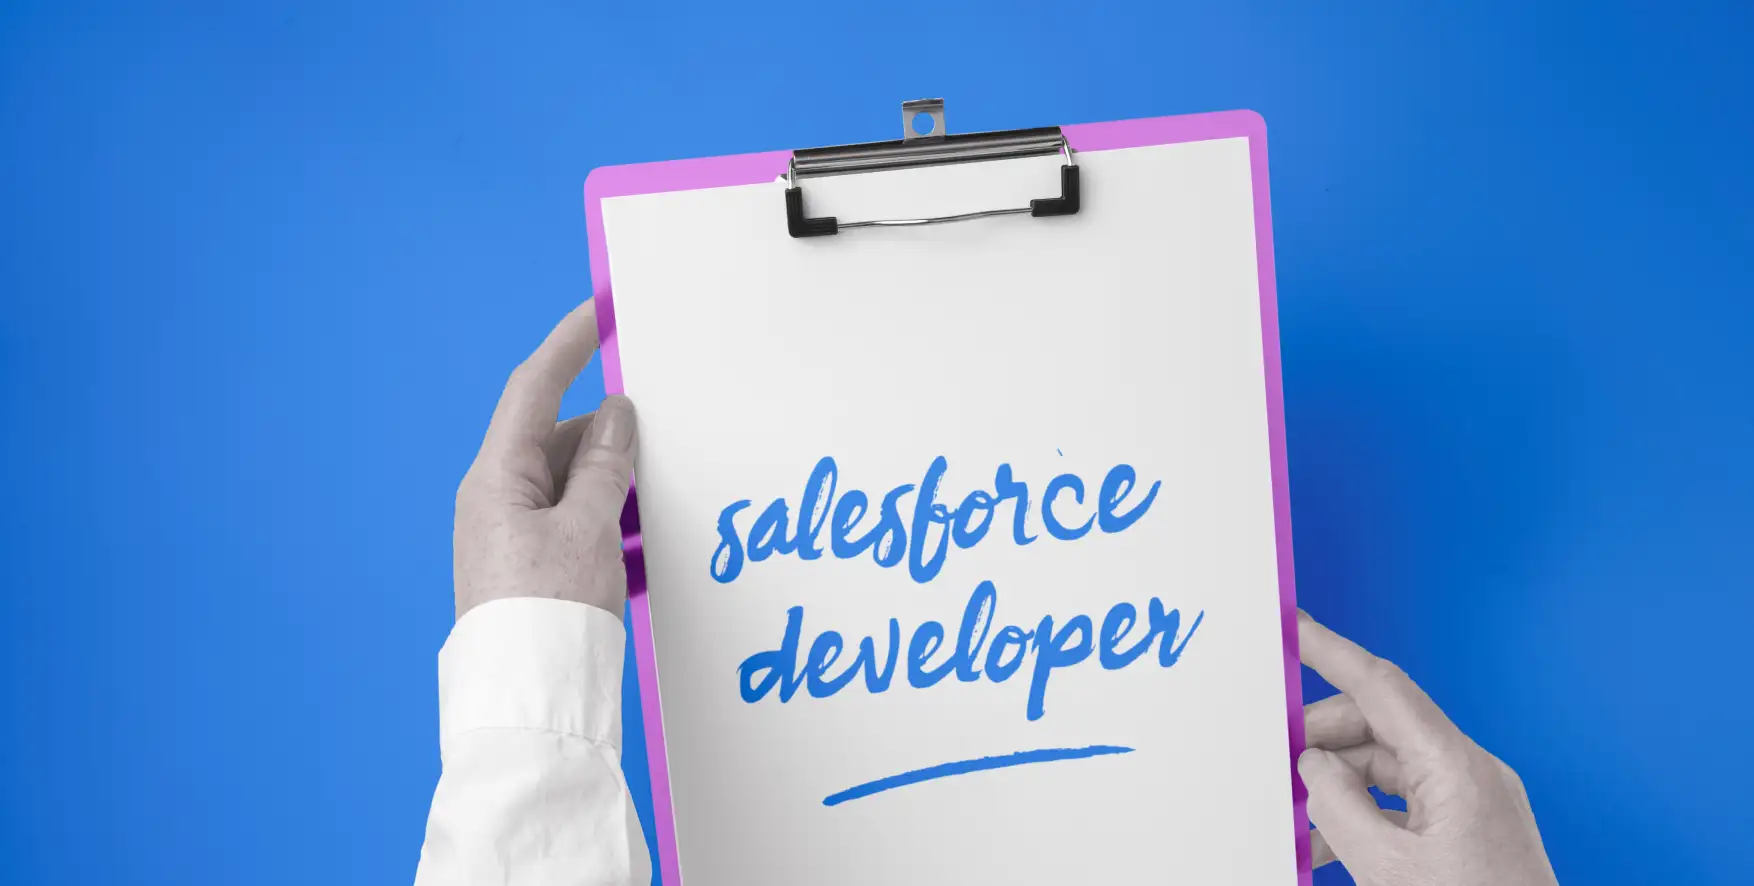 Salesforce developer written on a piece of paper in a clipboard